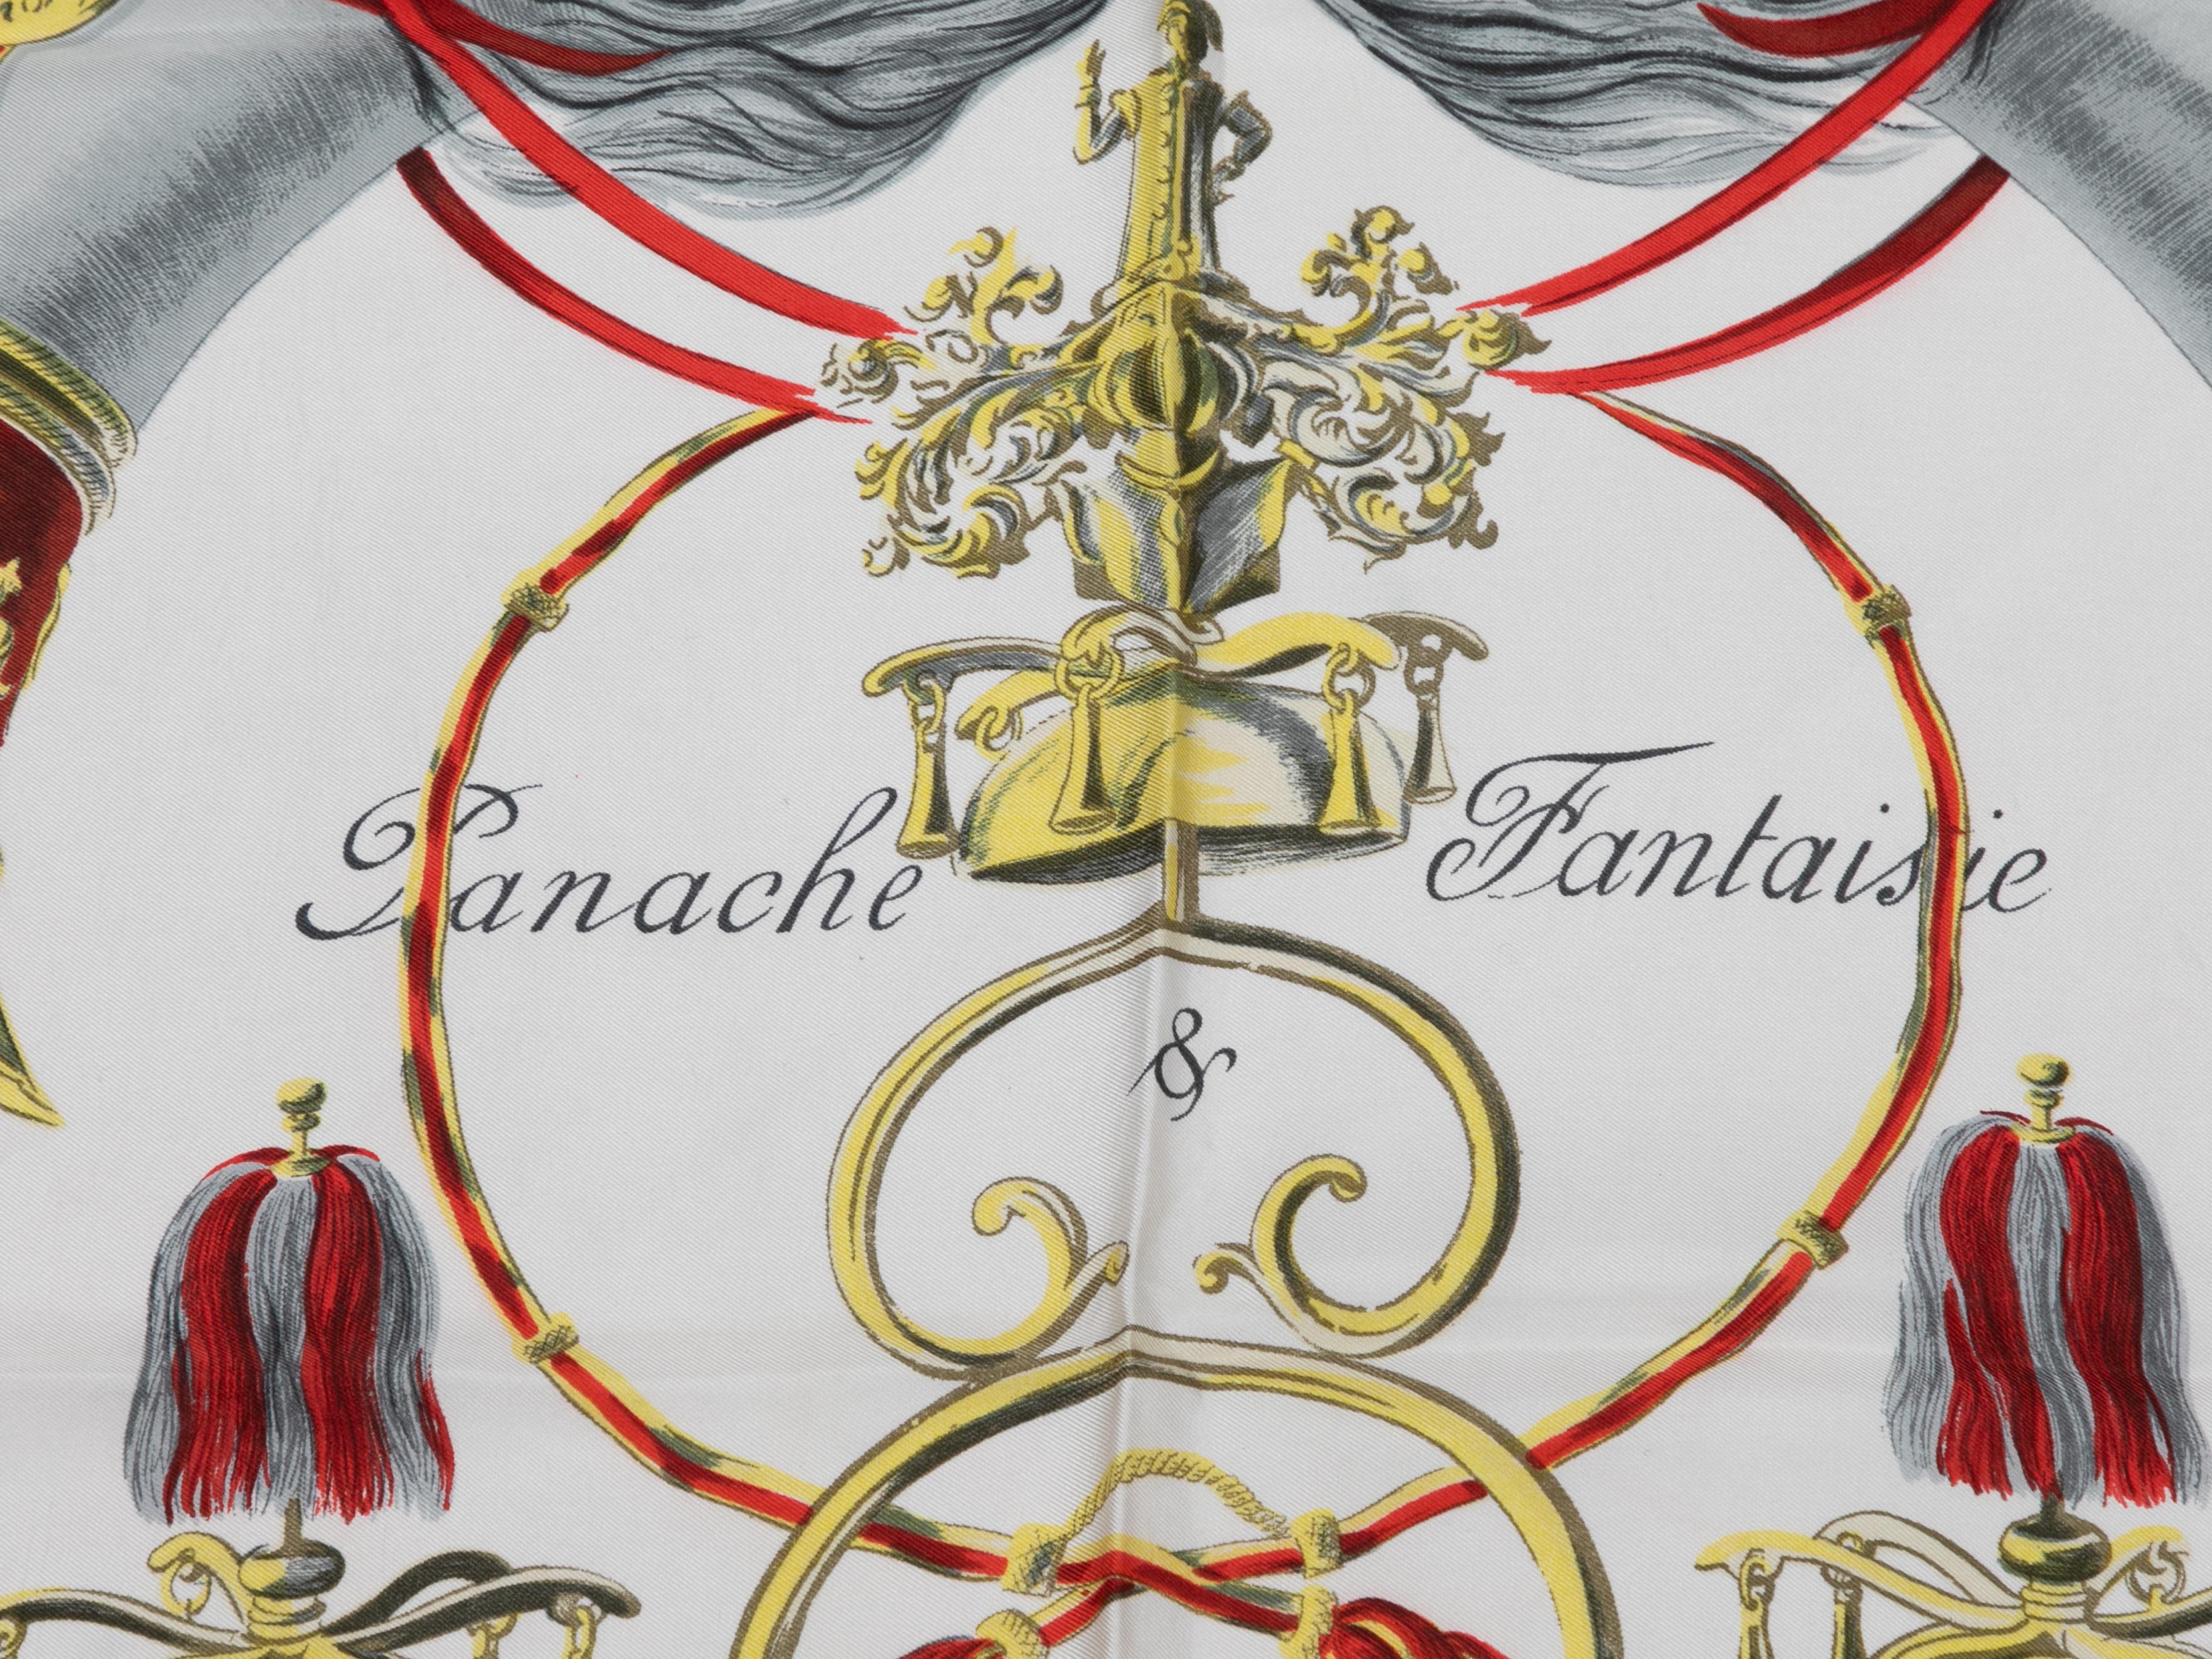 Foulard en soie imprimée à motifs Panache & Fantaisie, blanc et multicolore, Hermès. Largeur 34